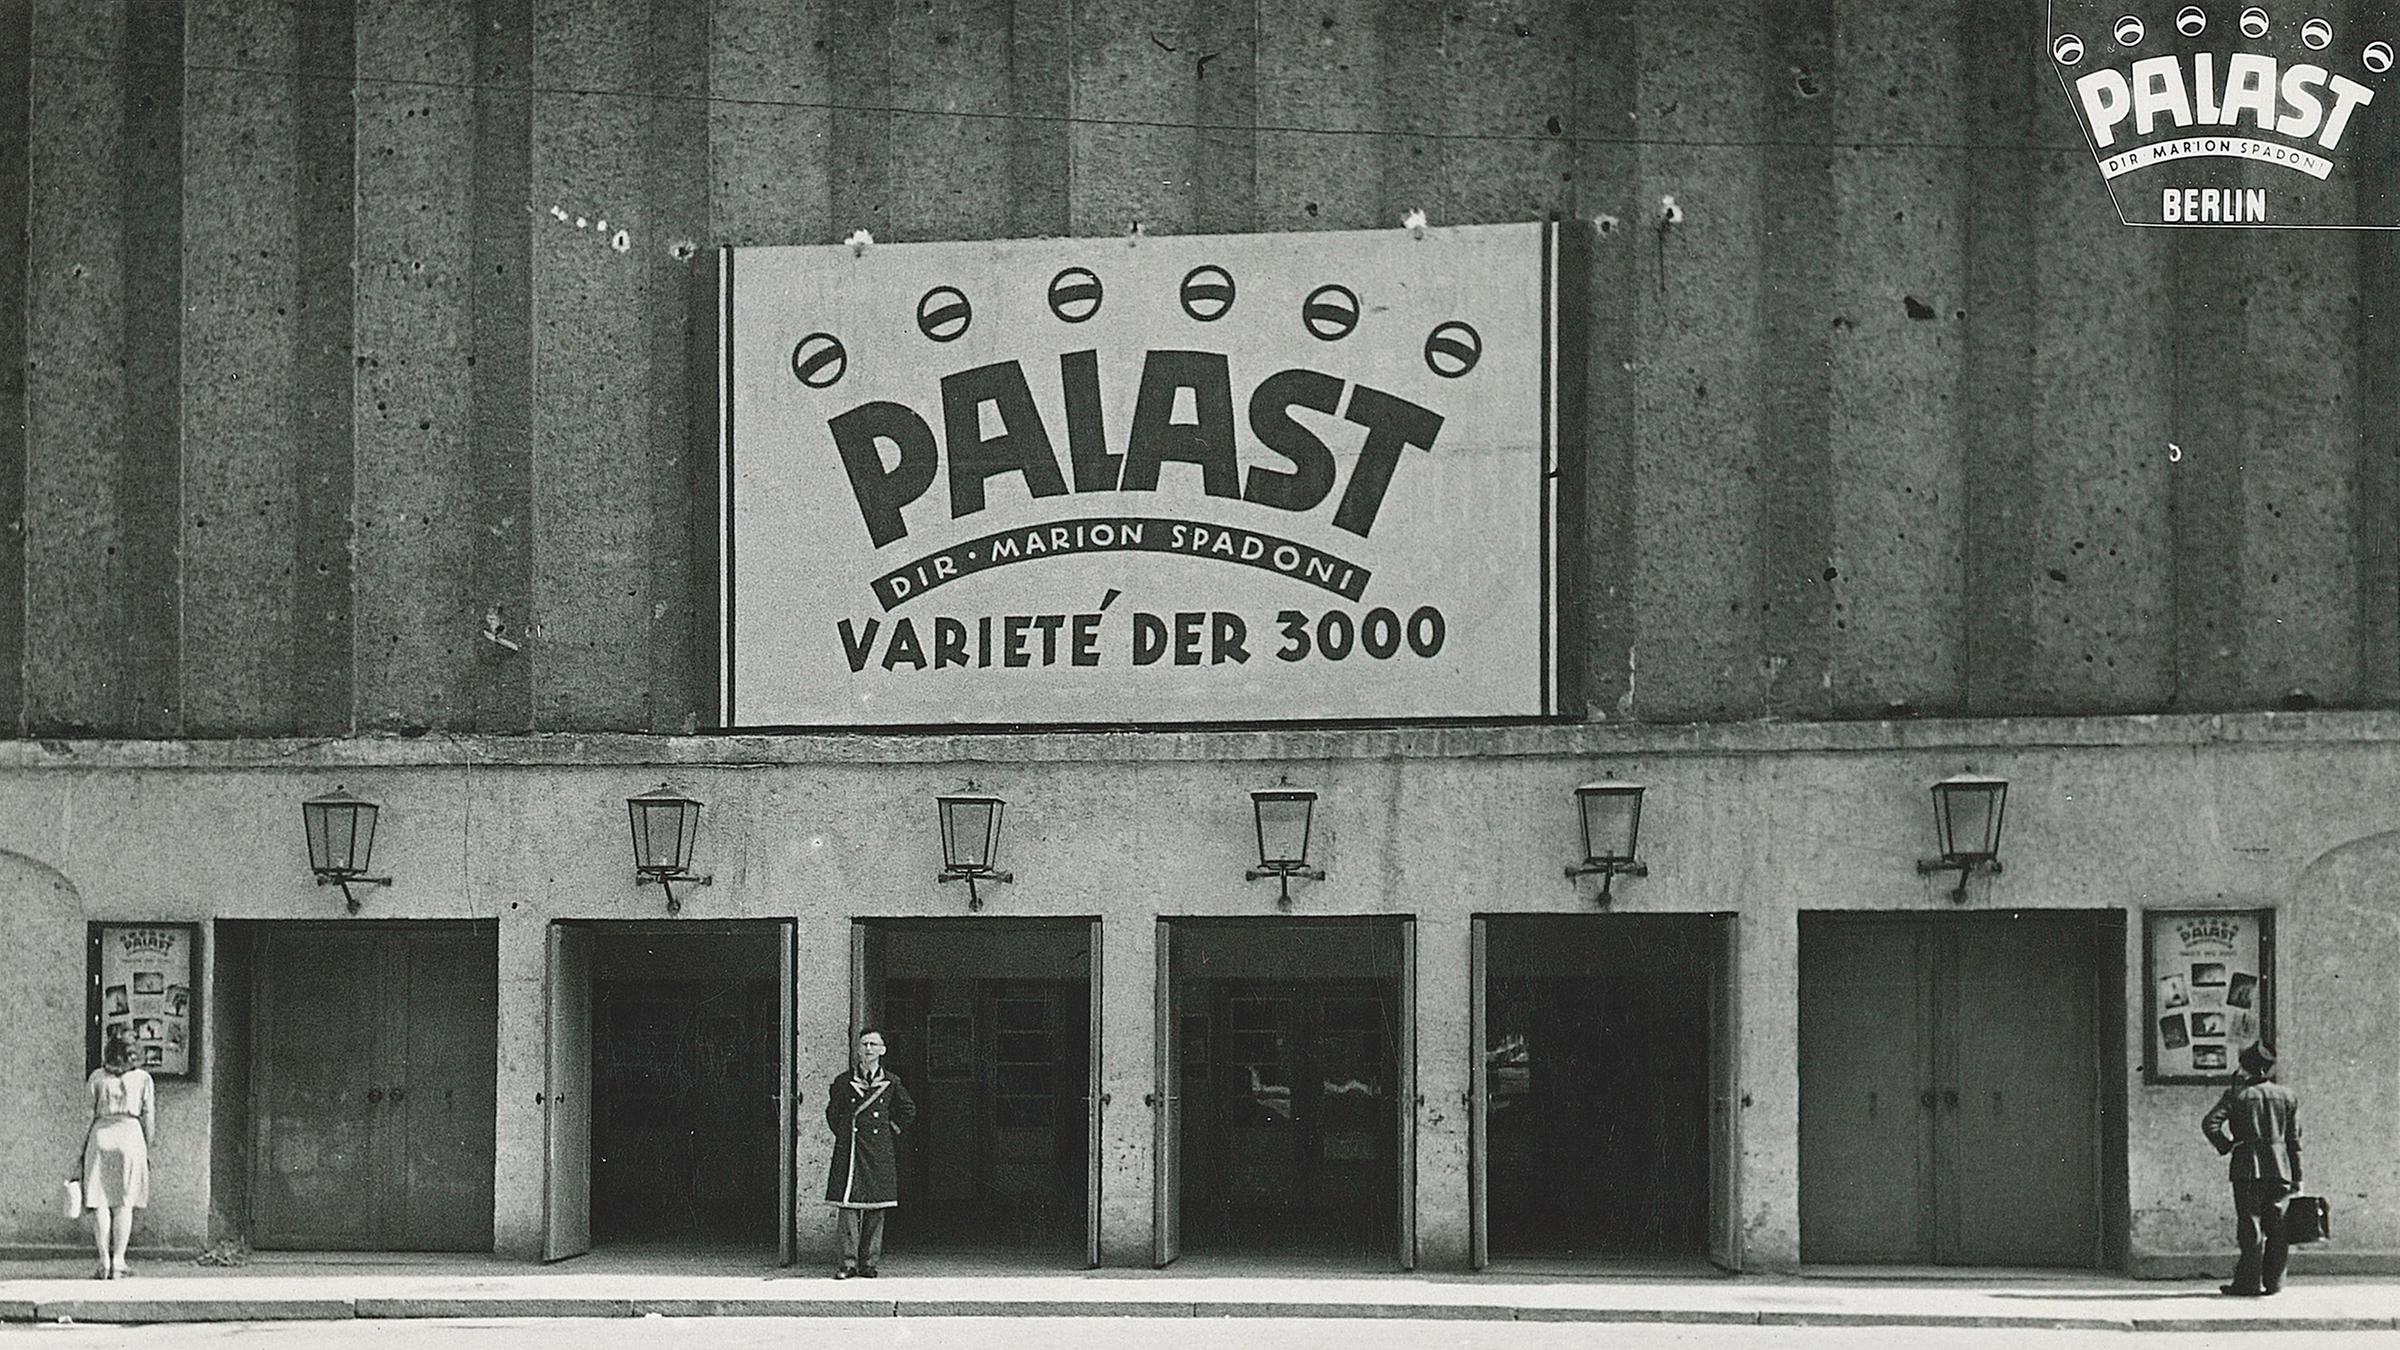 Haupteingang des Palast Varietés um 1945. Splitter von Kriegsgranaten ragen noch aus der Fassade.